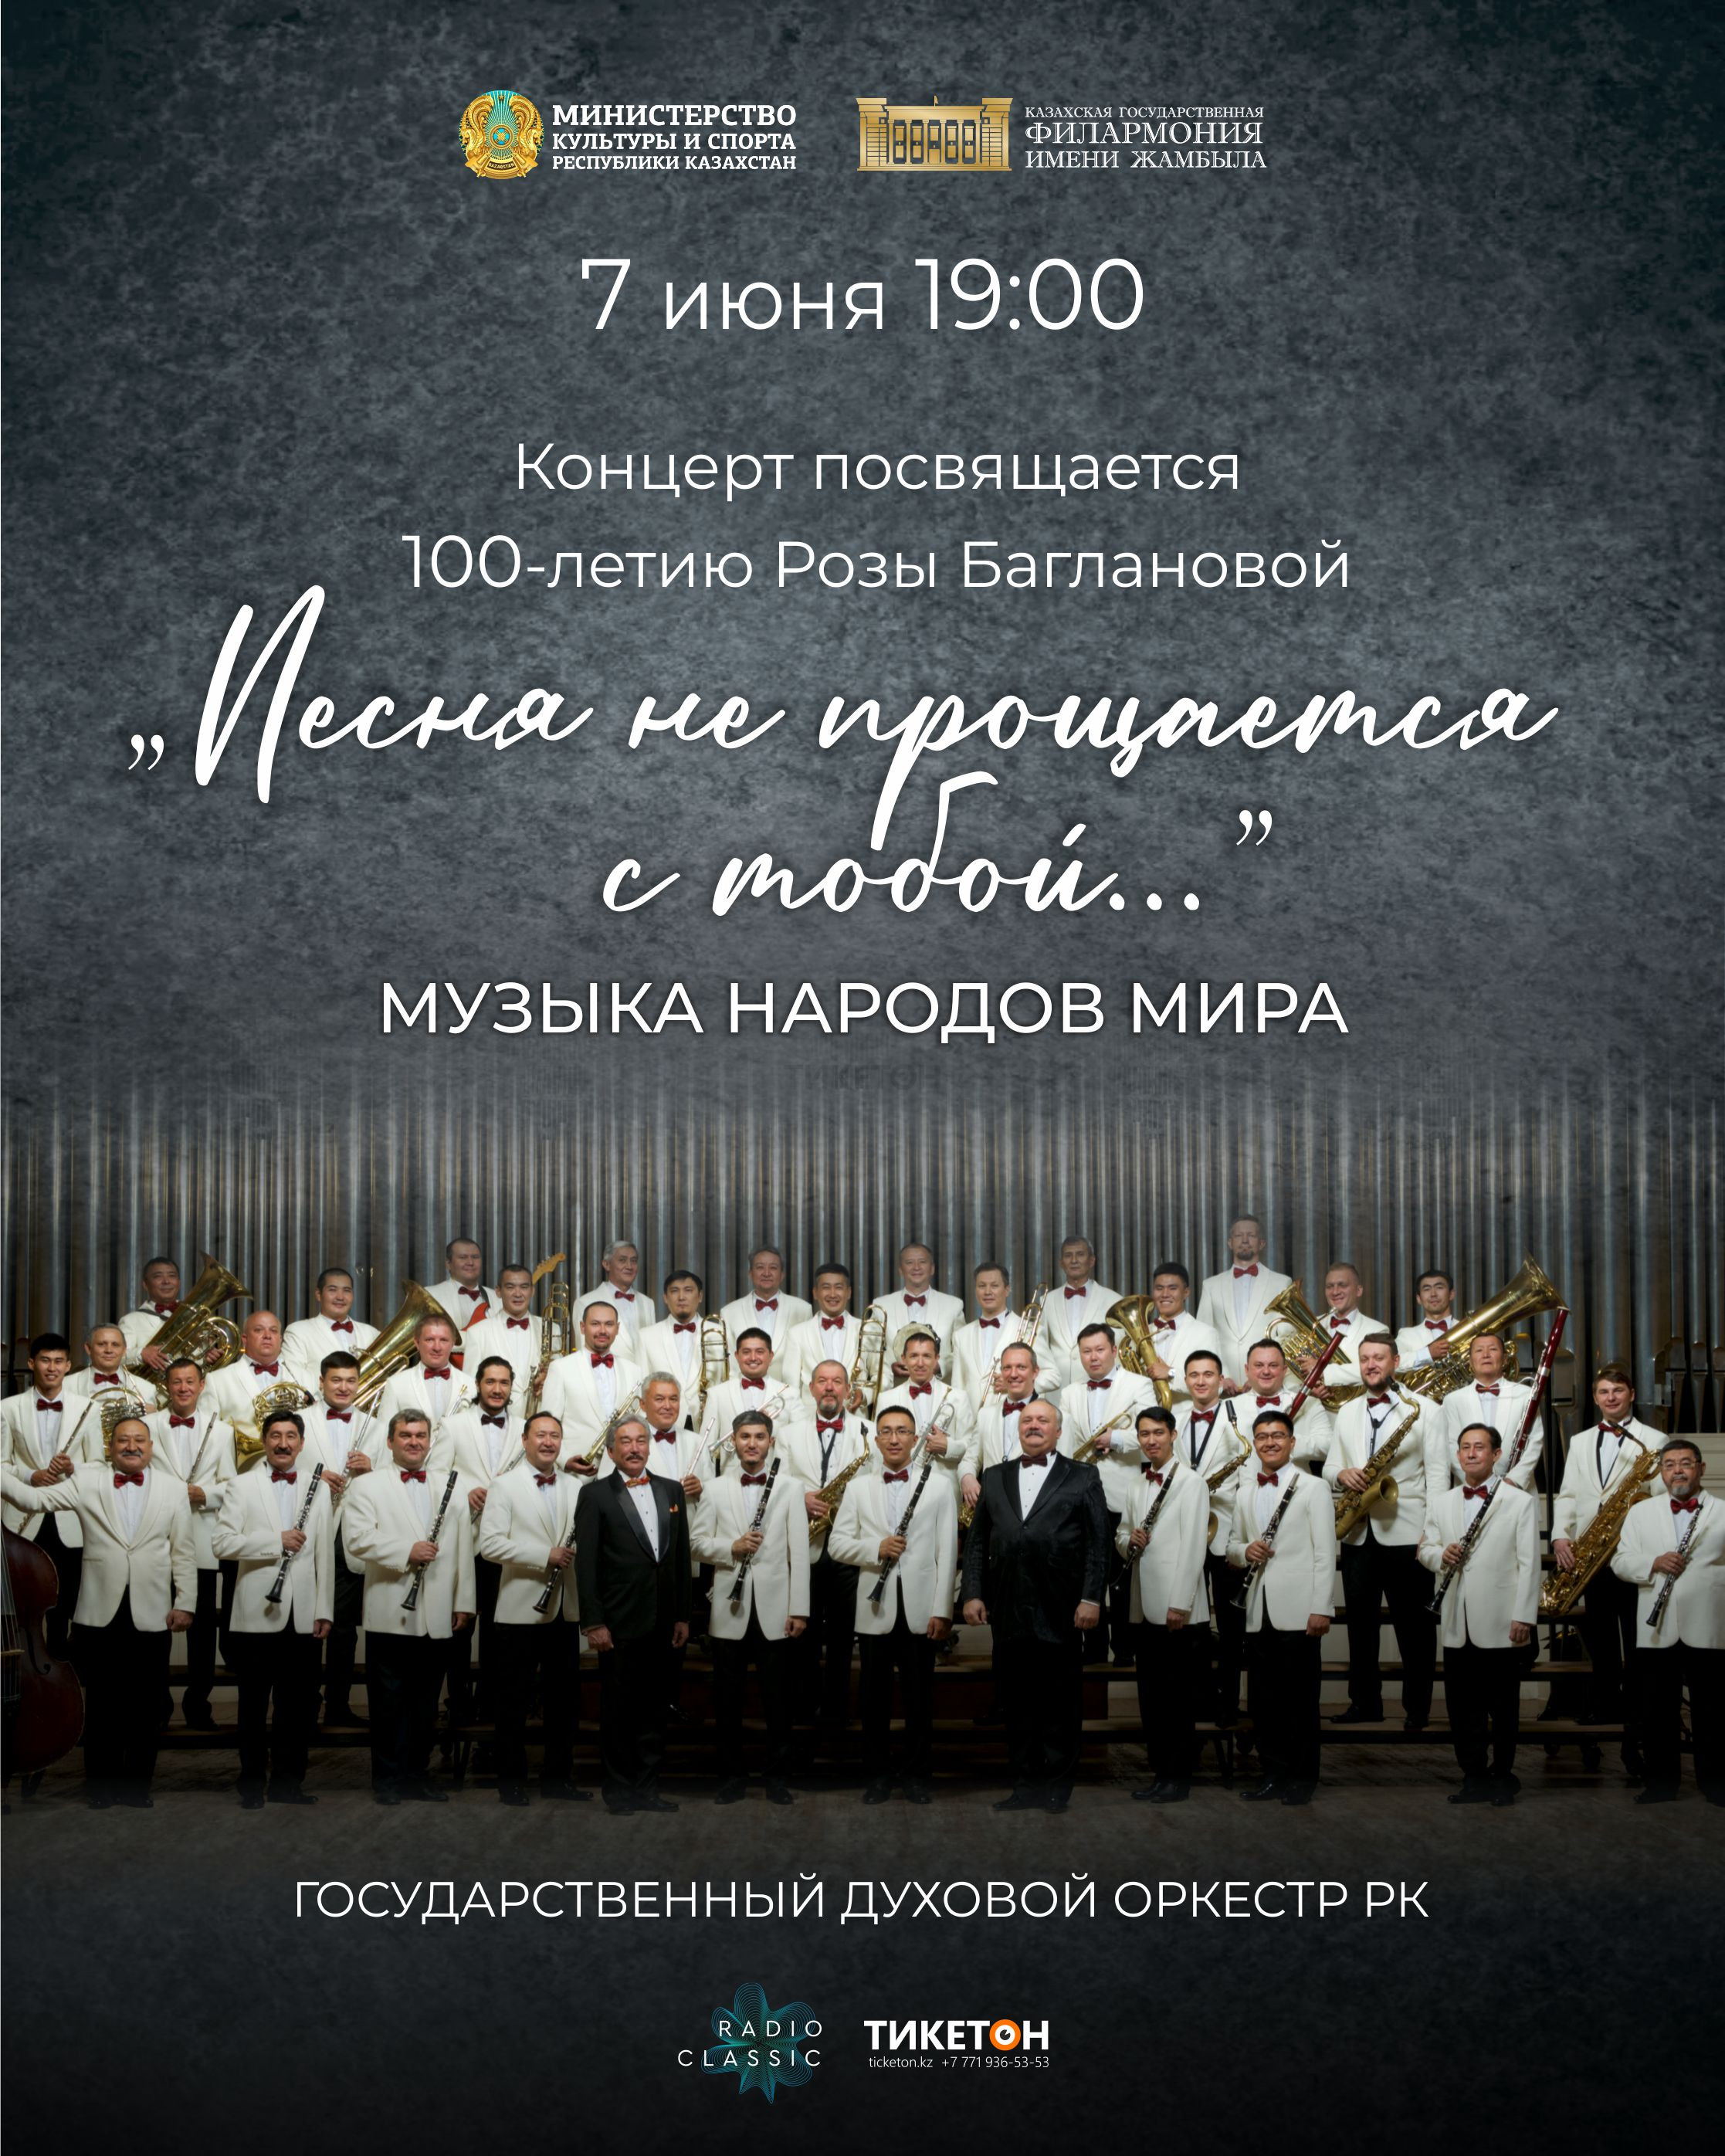 Концерт посвящается 100-летию Розы Баглановой